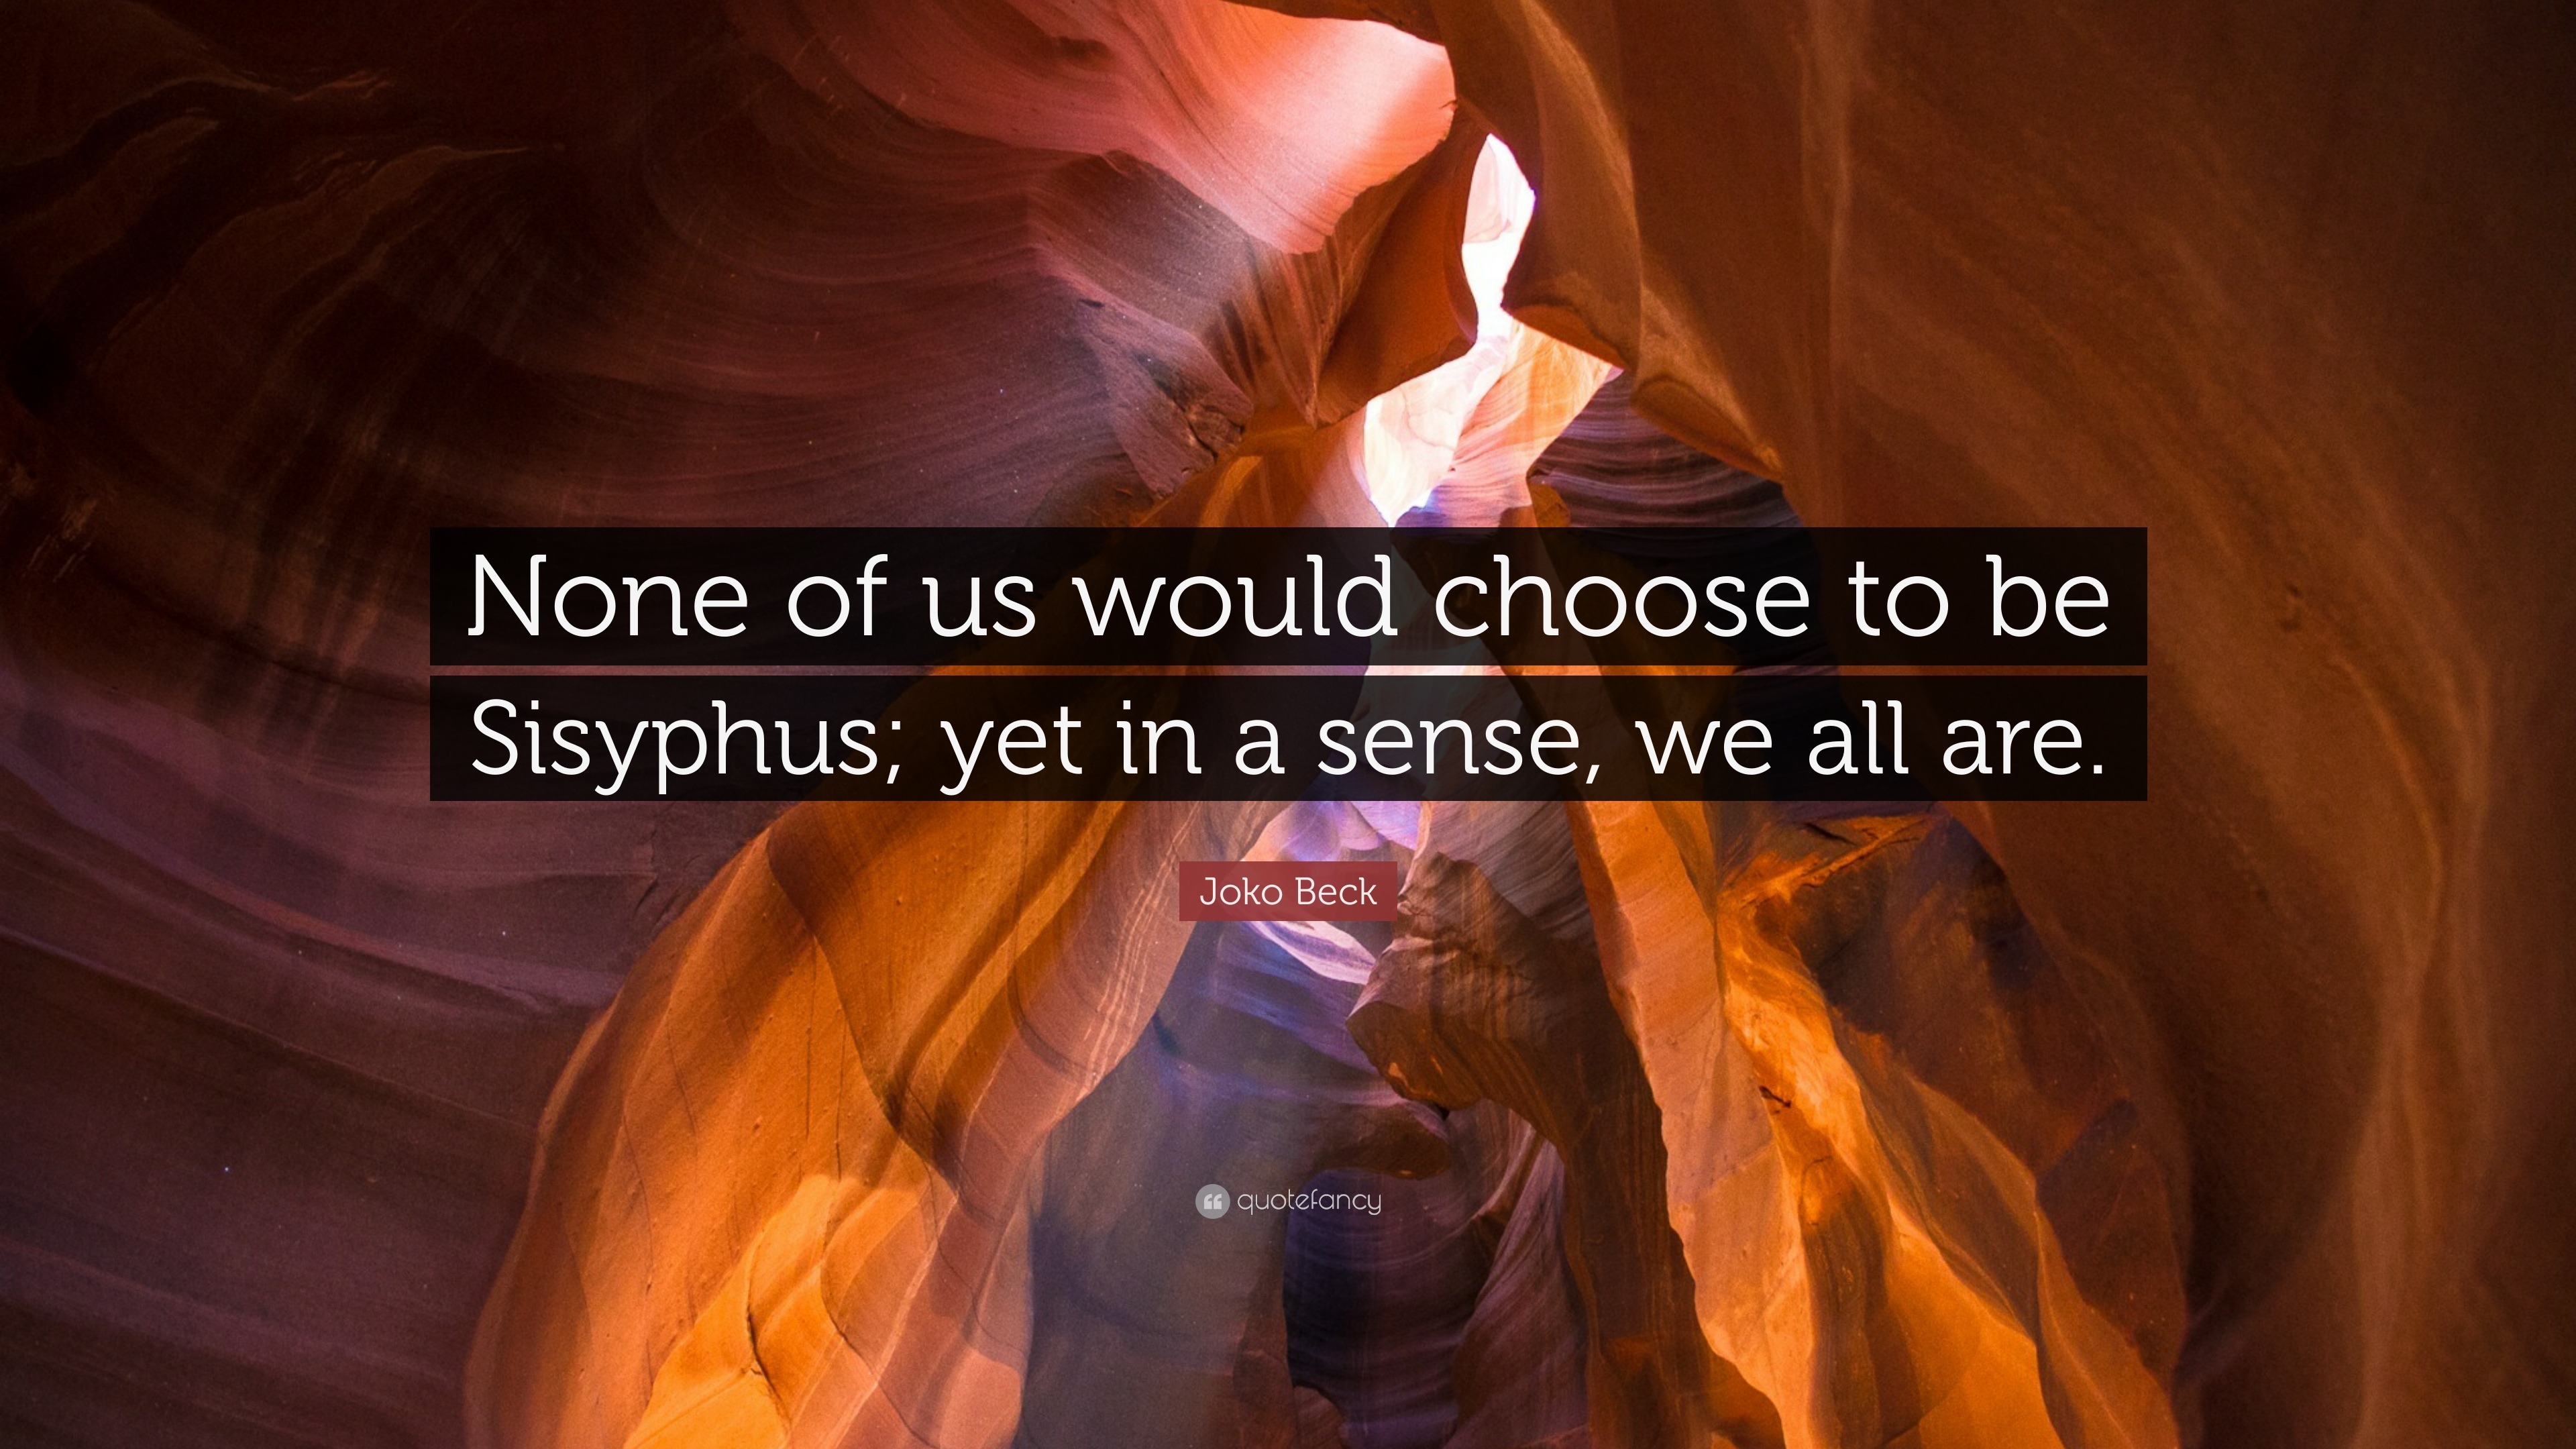 Sisyphus Gallery  Greek Myth Wikia  Fandom